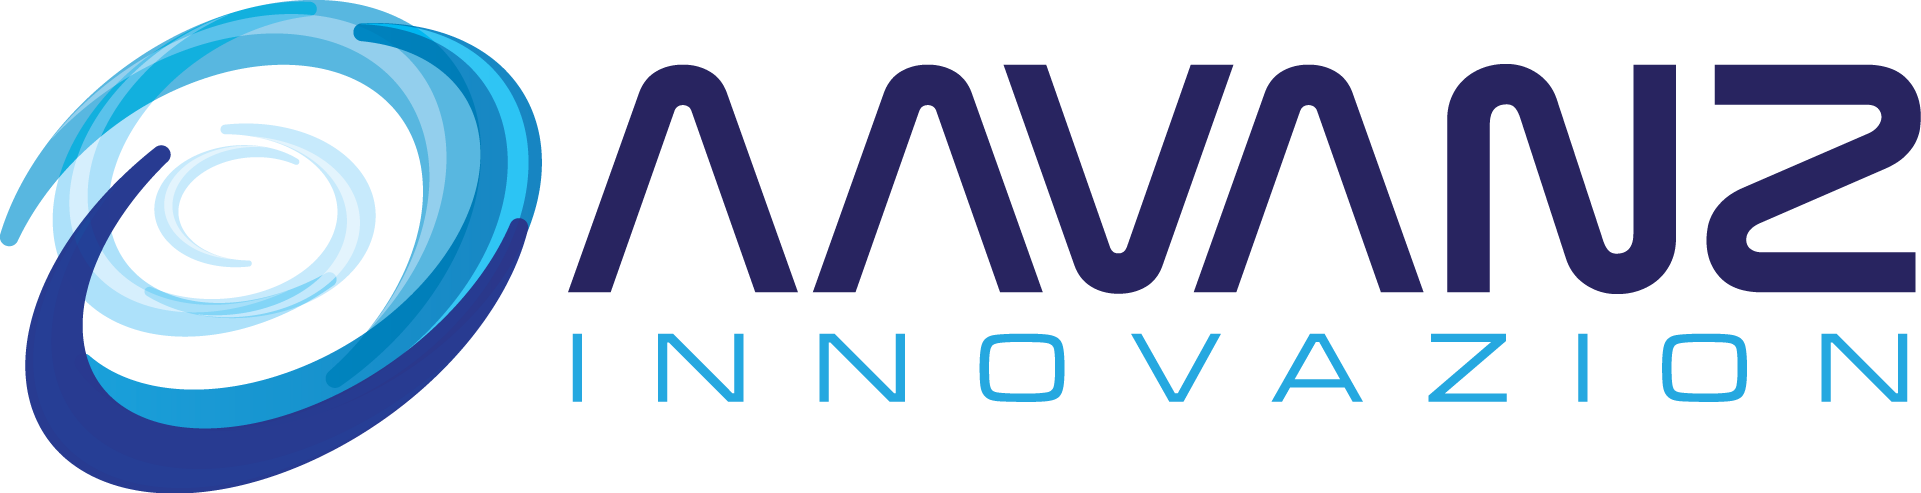 aavanz_logo.png